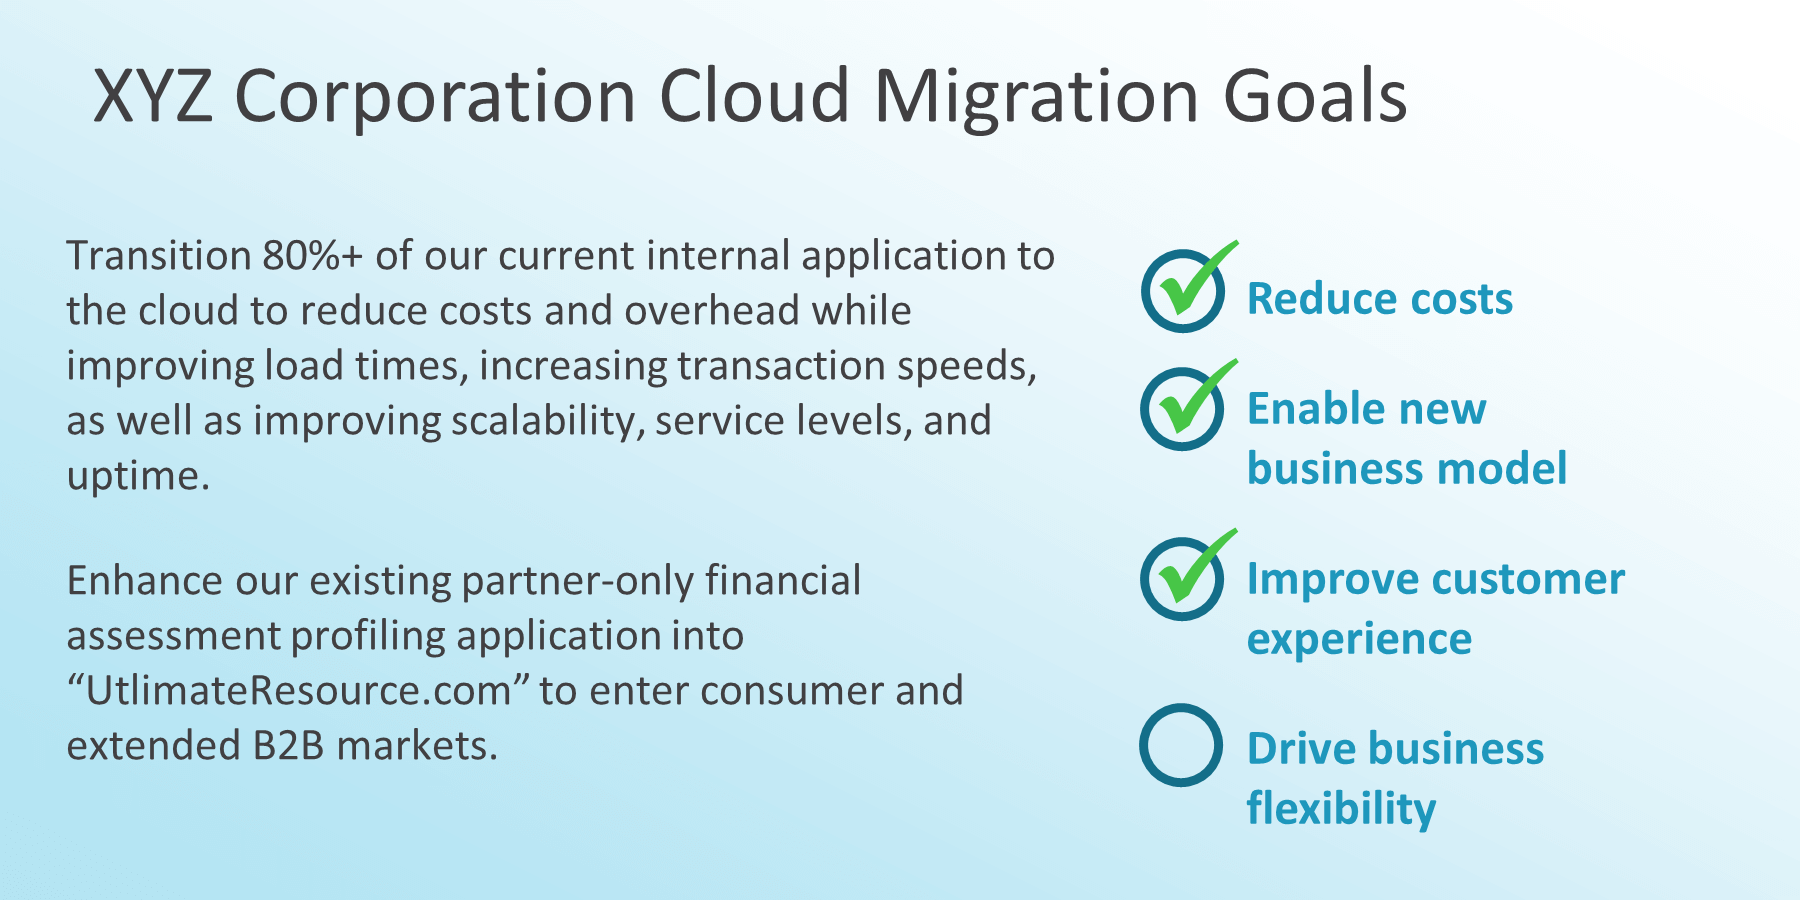 Cloud migration goals